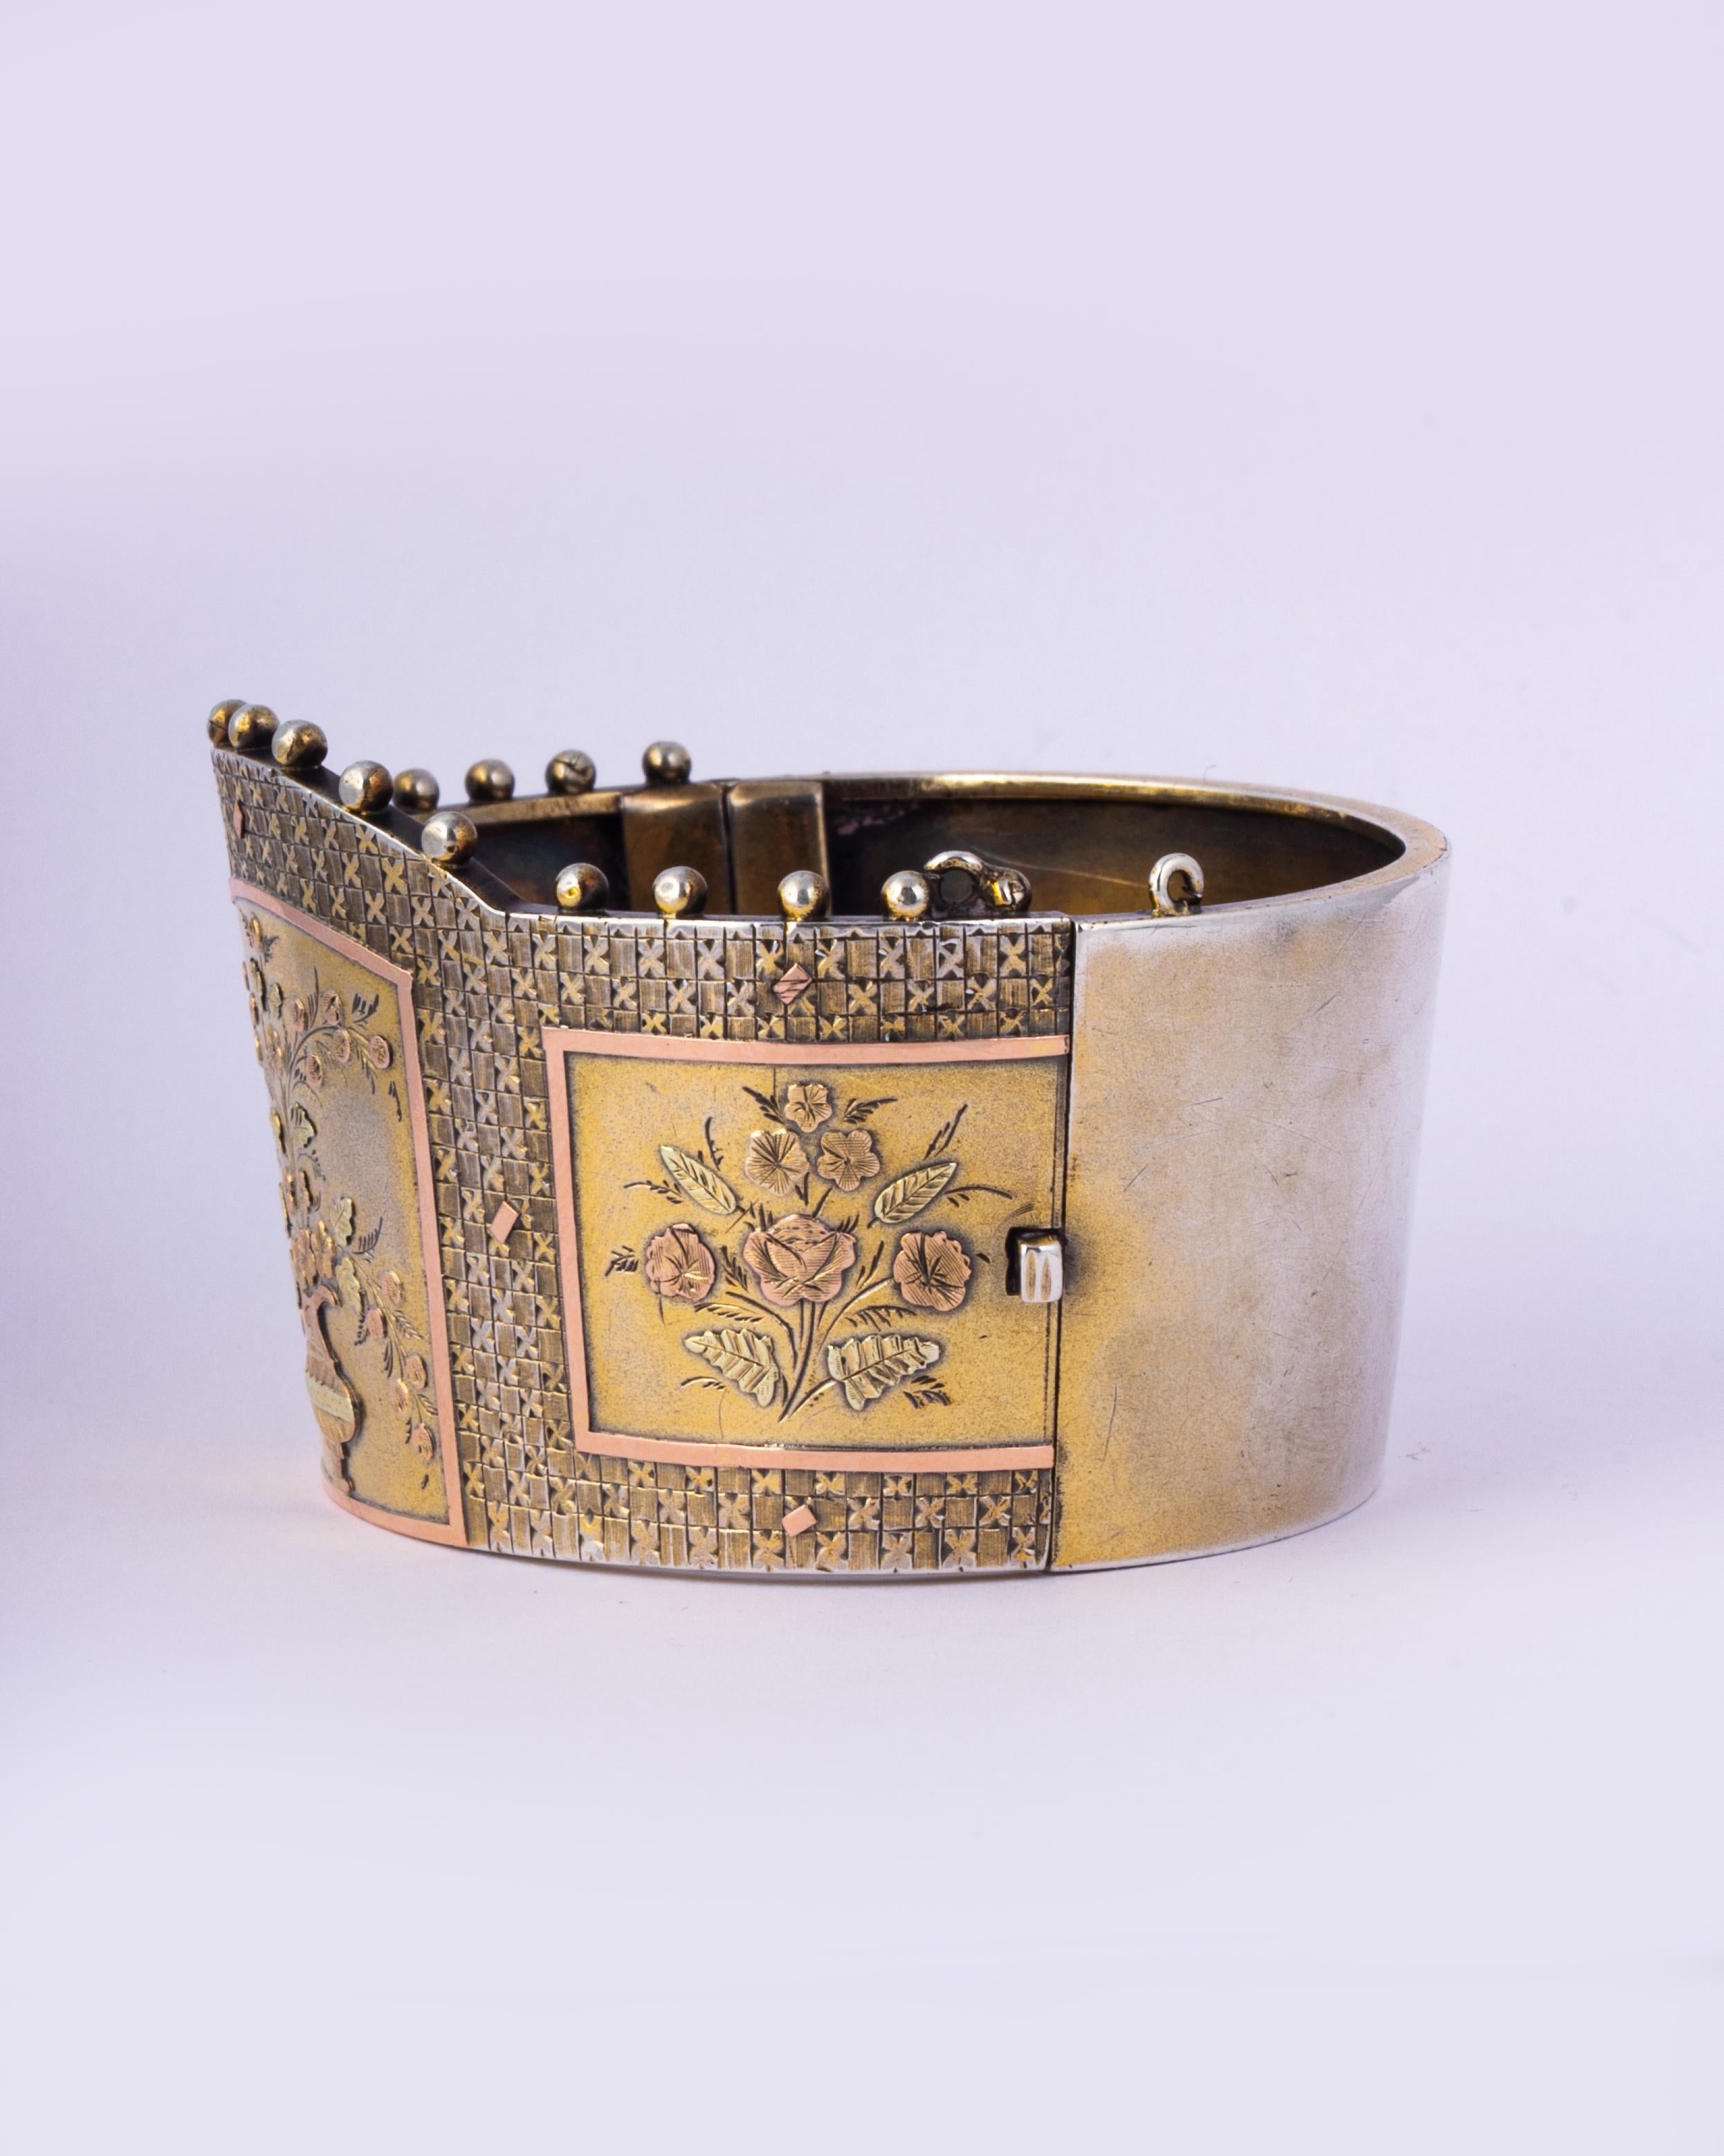 Ce large bracelet en argent brillant présente un magnifique motif représentant un vase de fleurs créé en superposition d'or jaune et rose. La gravure est si fine et si belle. 

Diamètre intérieur : 55 mm 
Largeur : 41mm 

Poids : 41,1 g